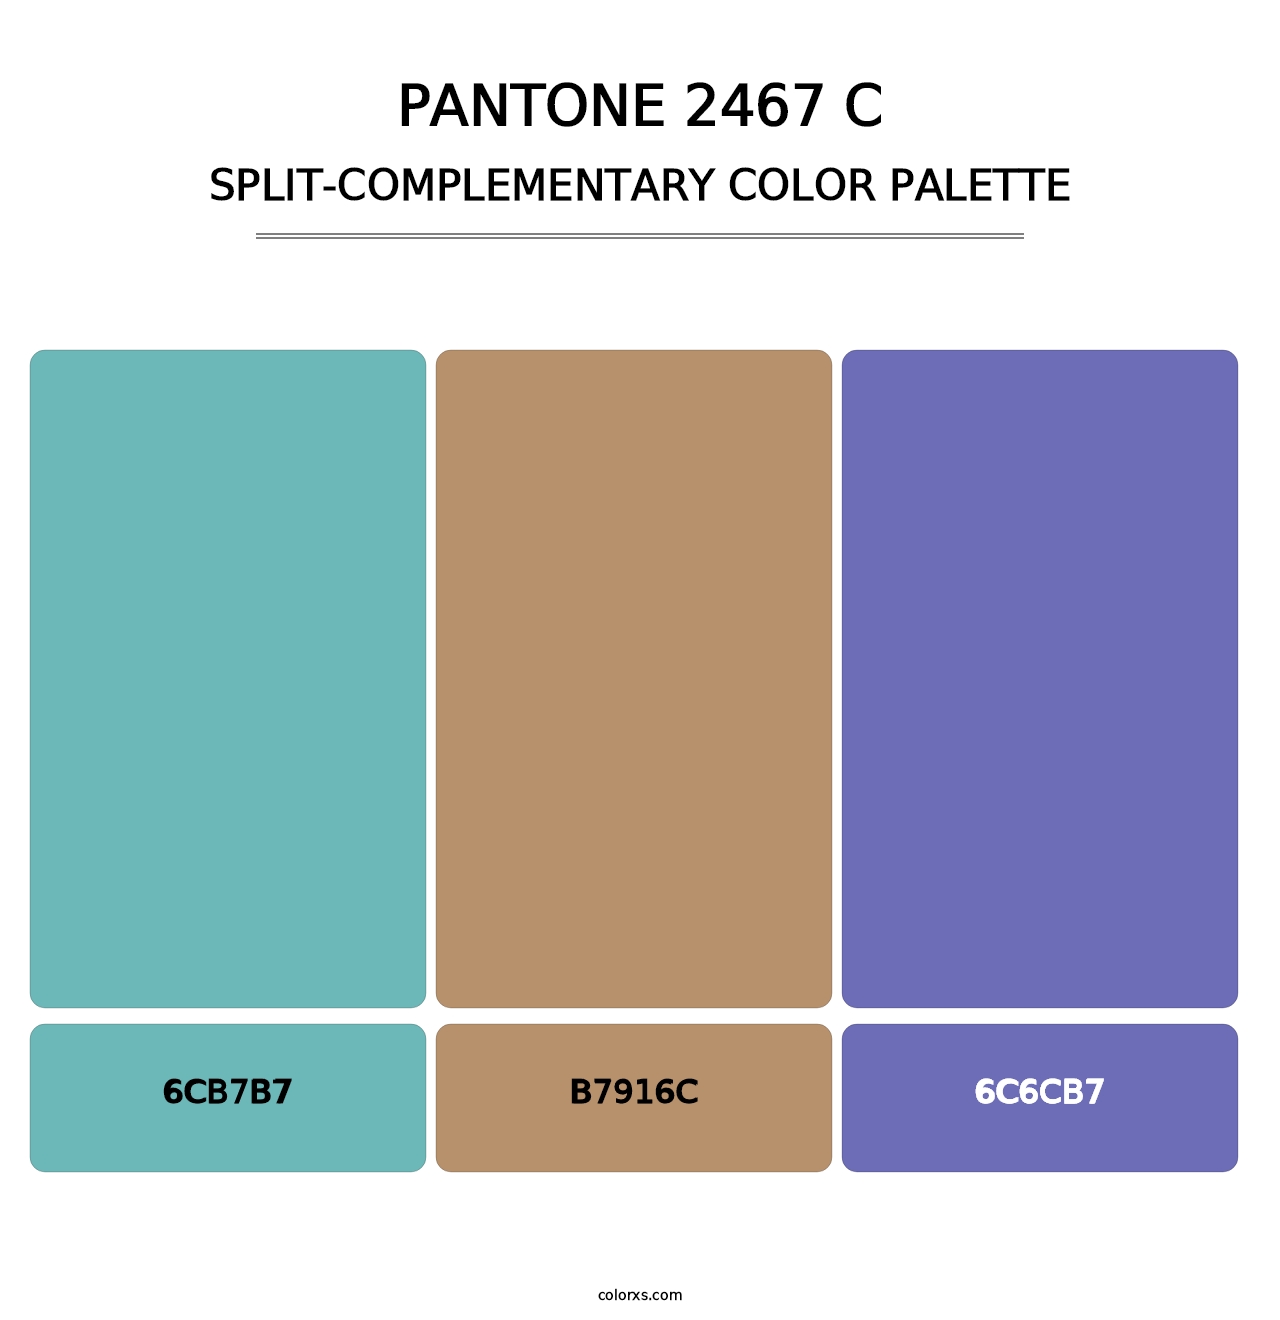 PANTONE 2467 C - Split-Complementary Color Palette